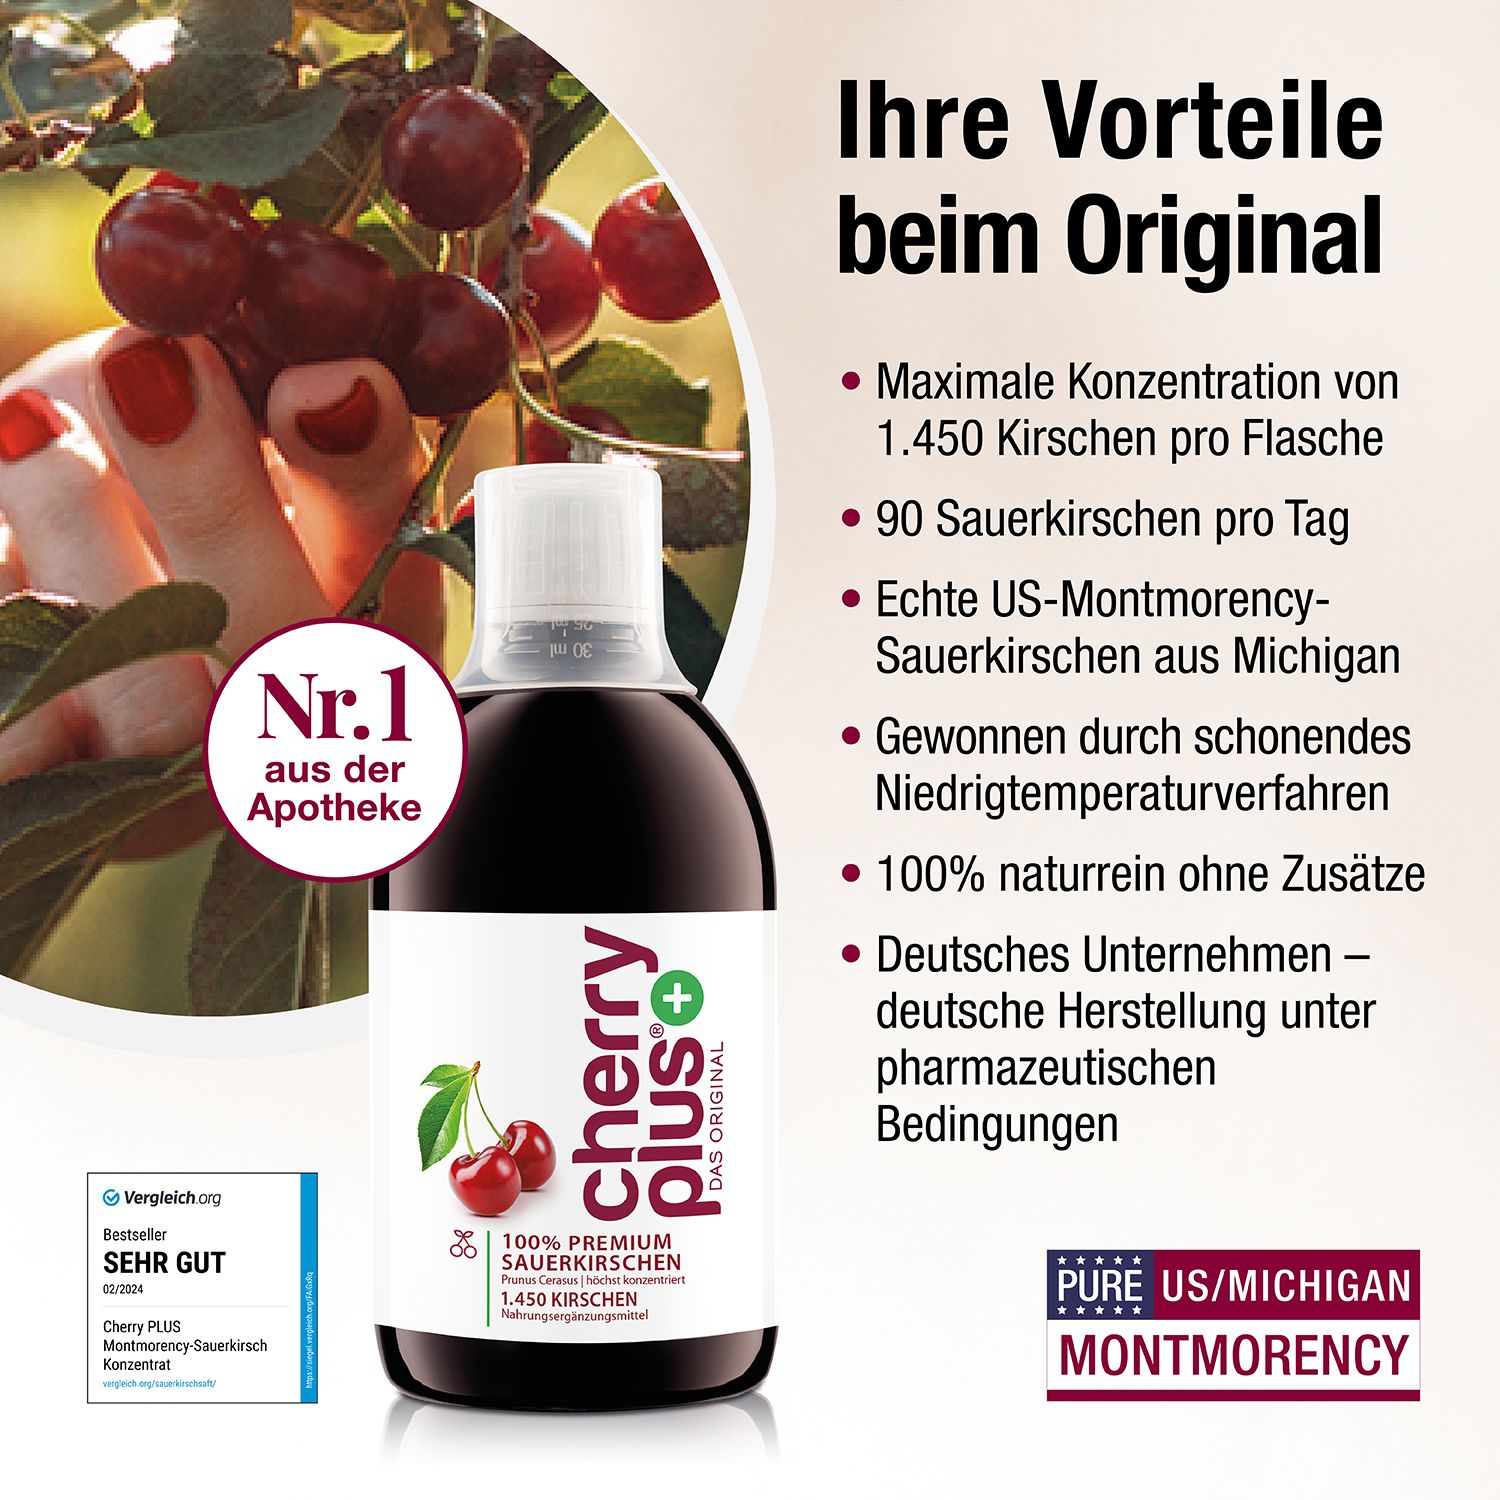 CherryPLUS 100% Sauerkirsche? - Food Check